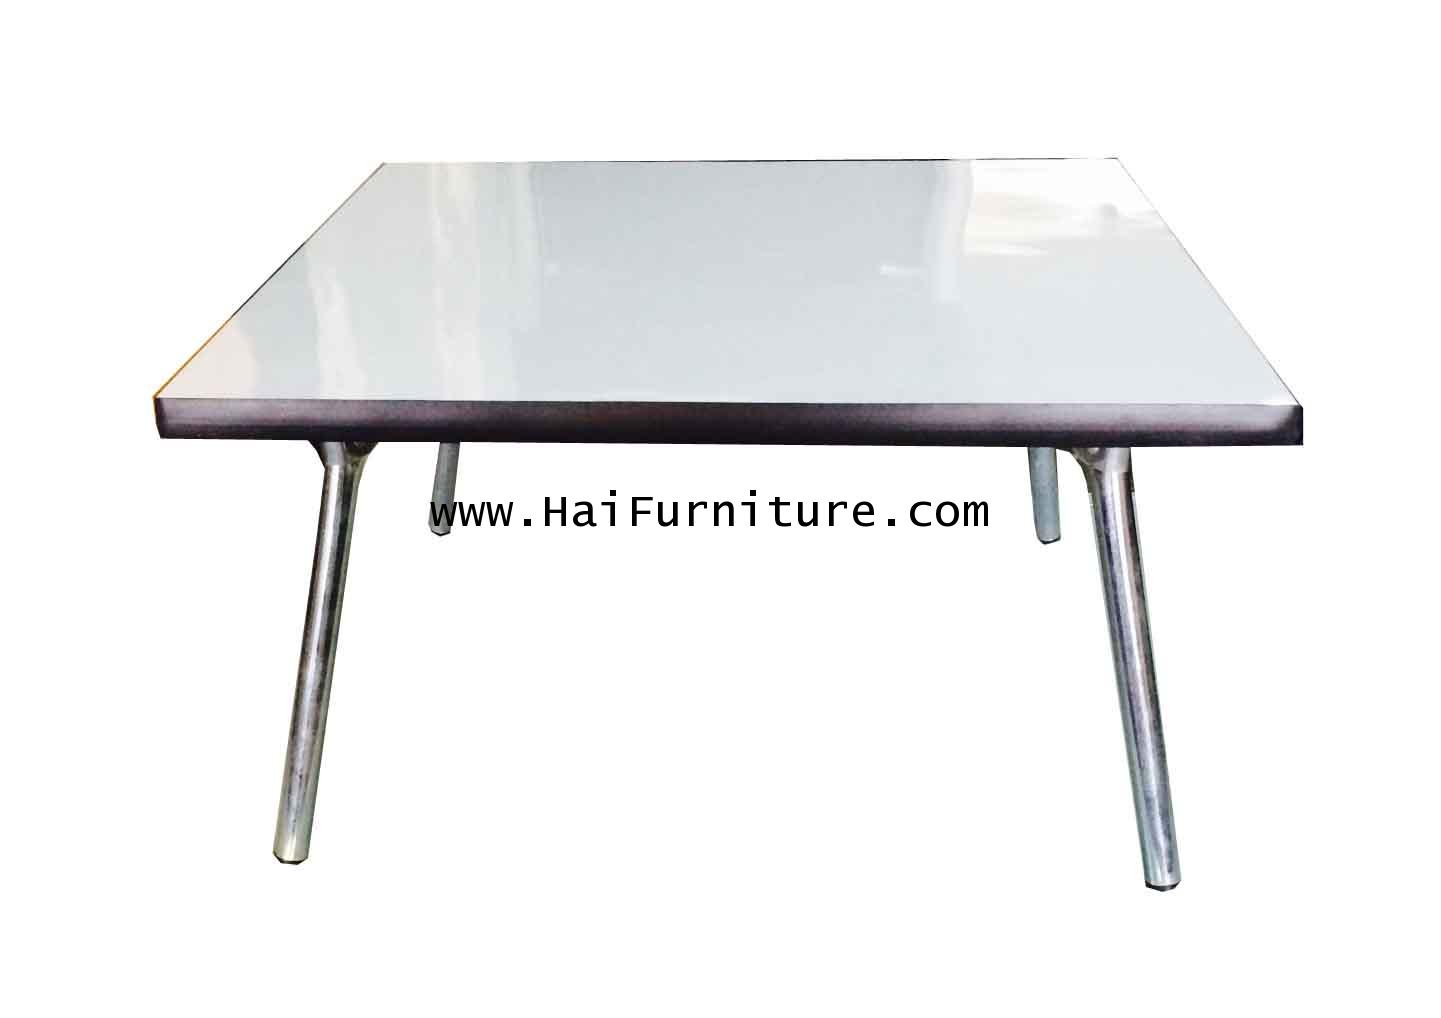 โต๊ะพับญี่ปุ่นหน้าโฟเมกา สีขาว 1